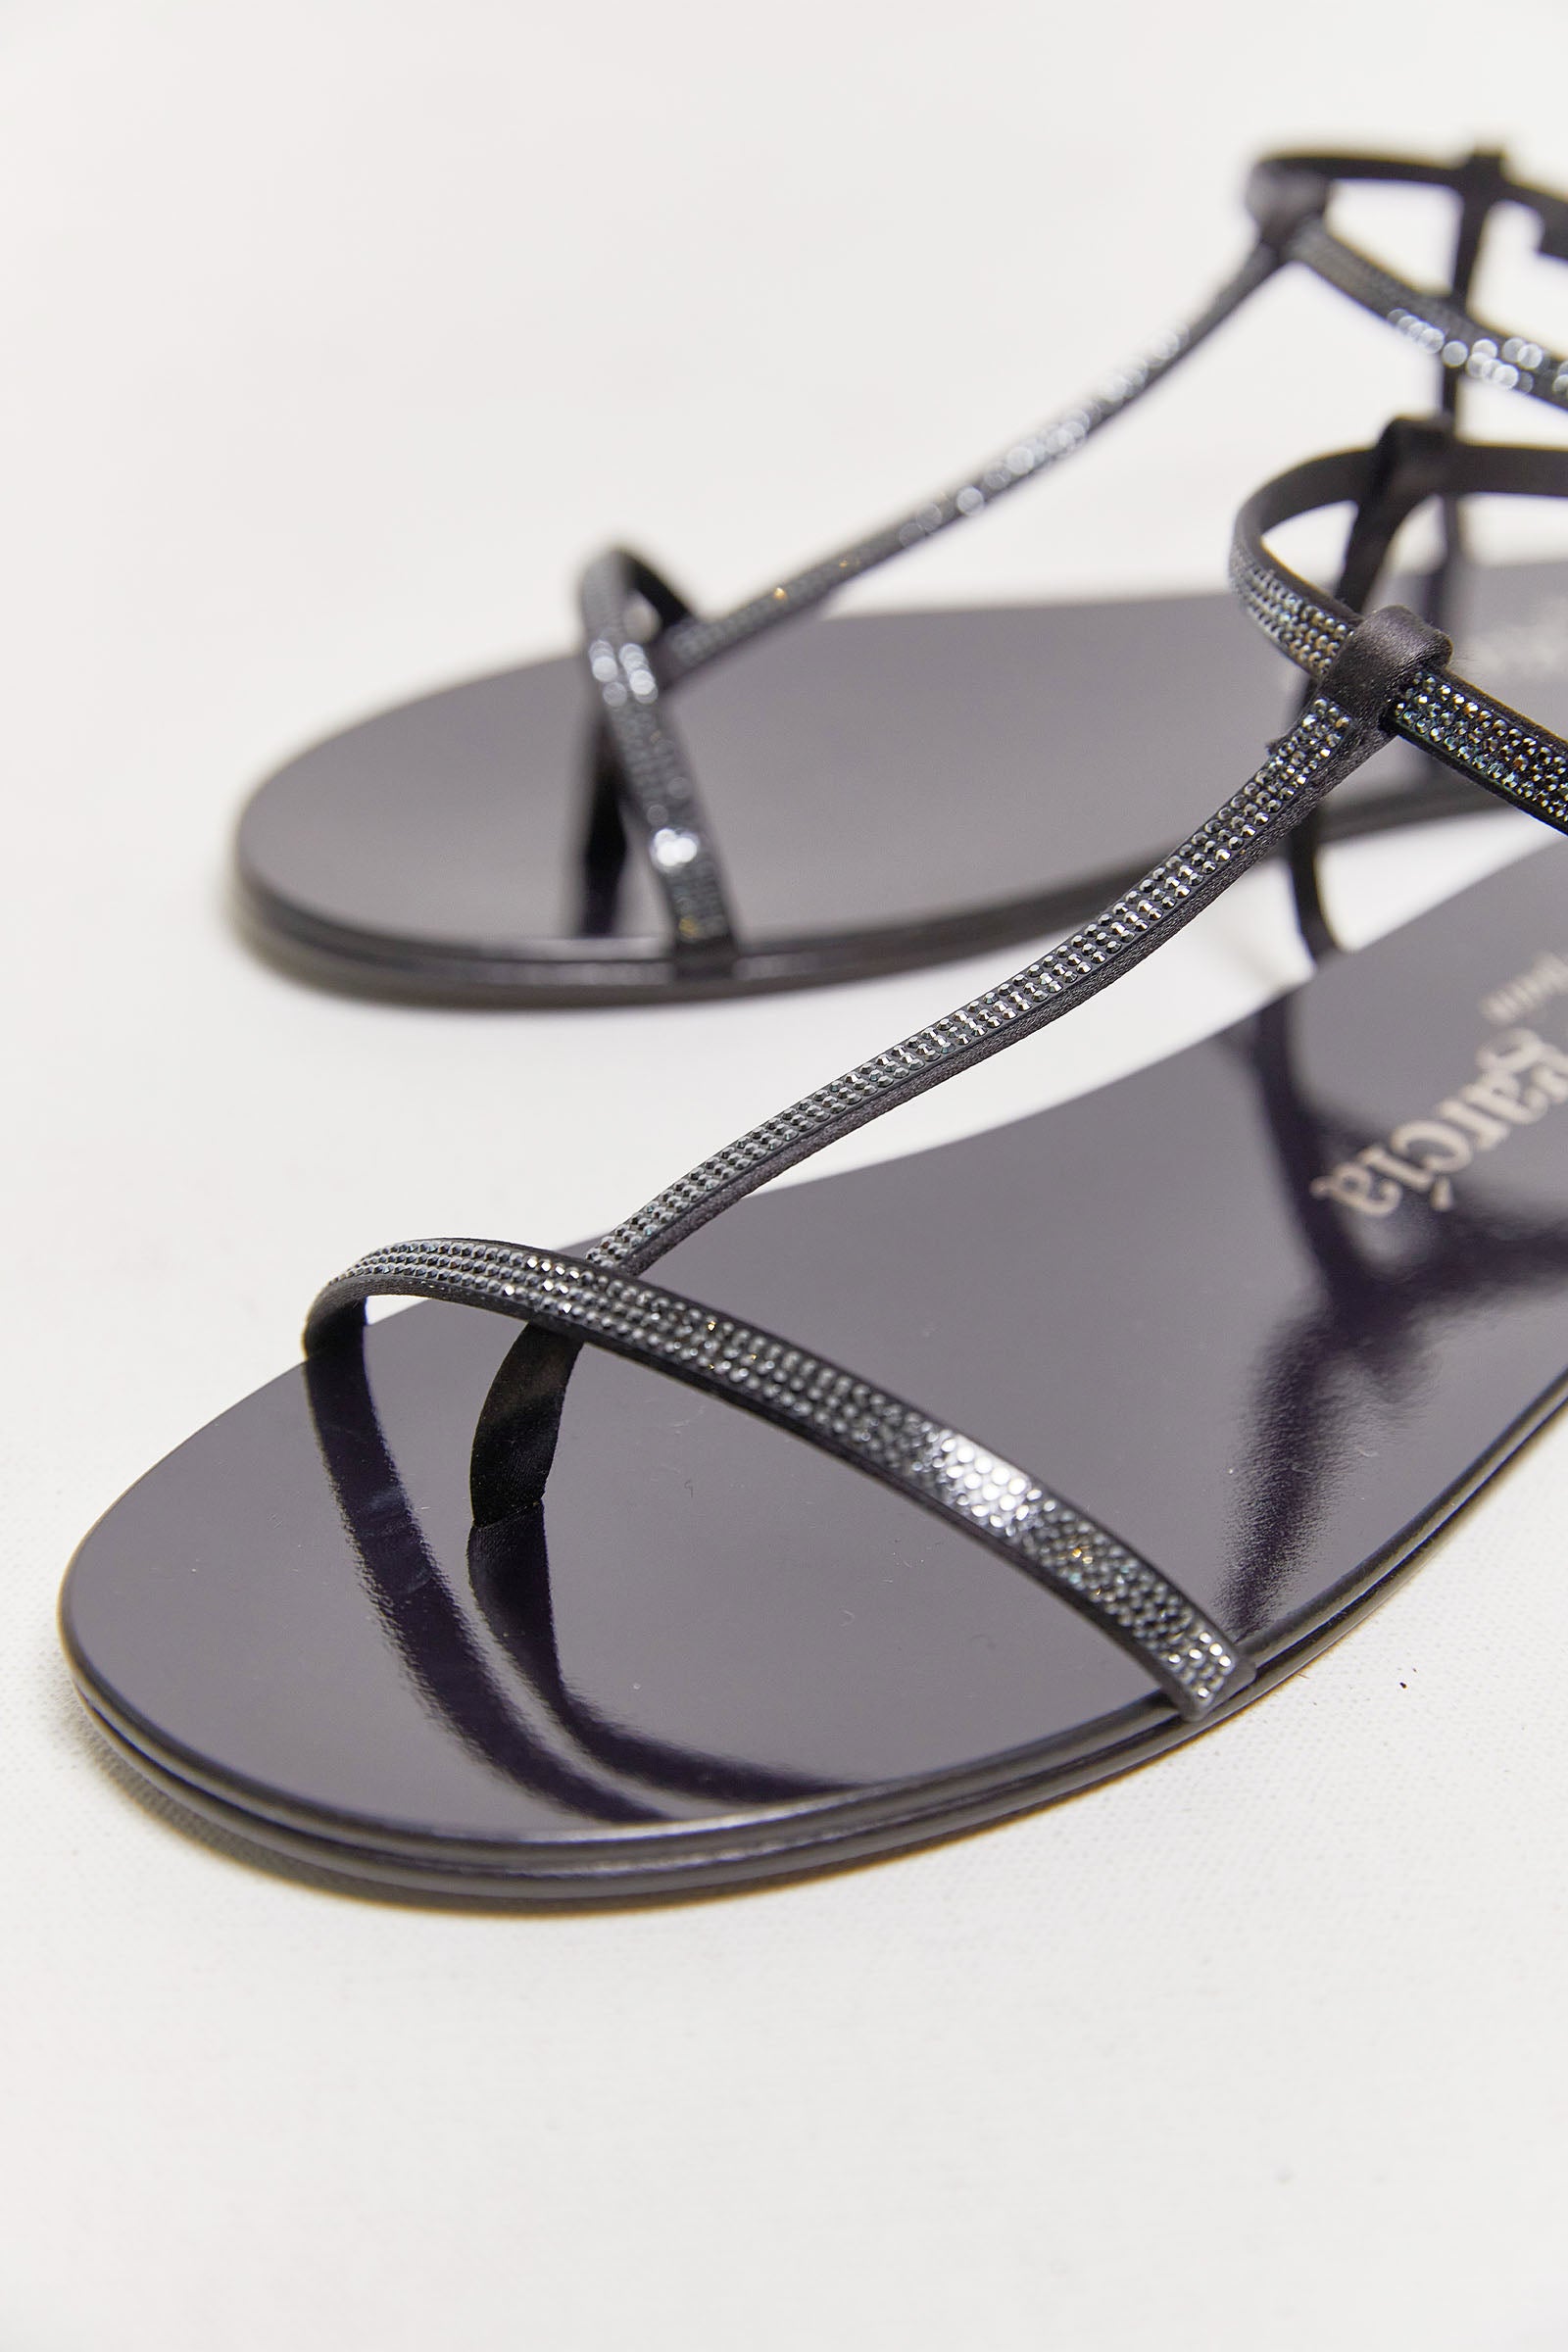 byfreer pedro garcia obsidian swarovski sandals.